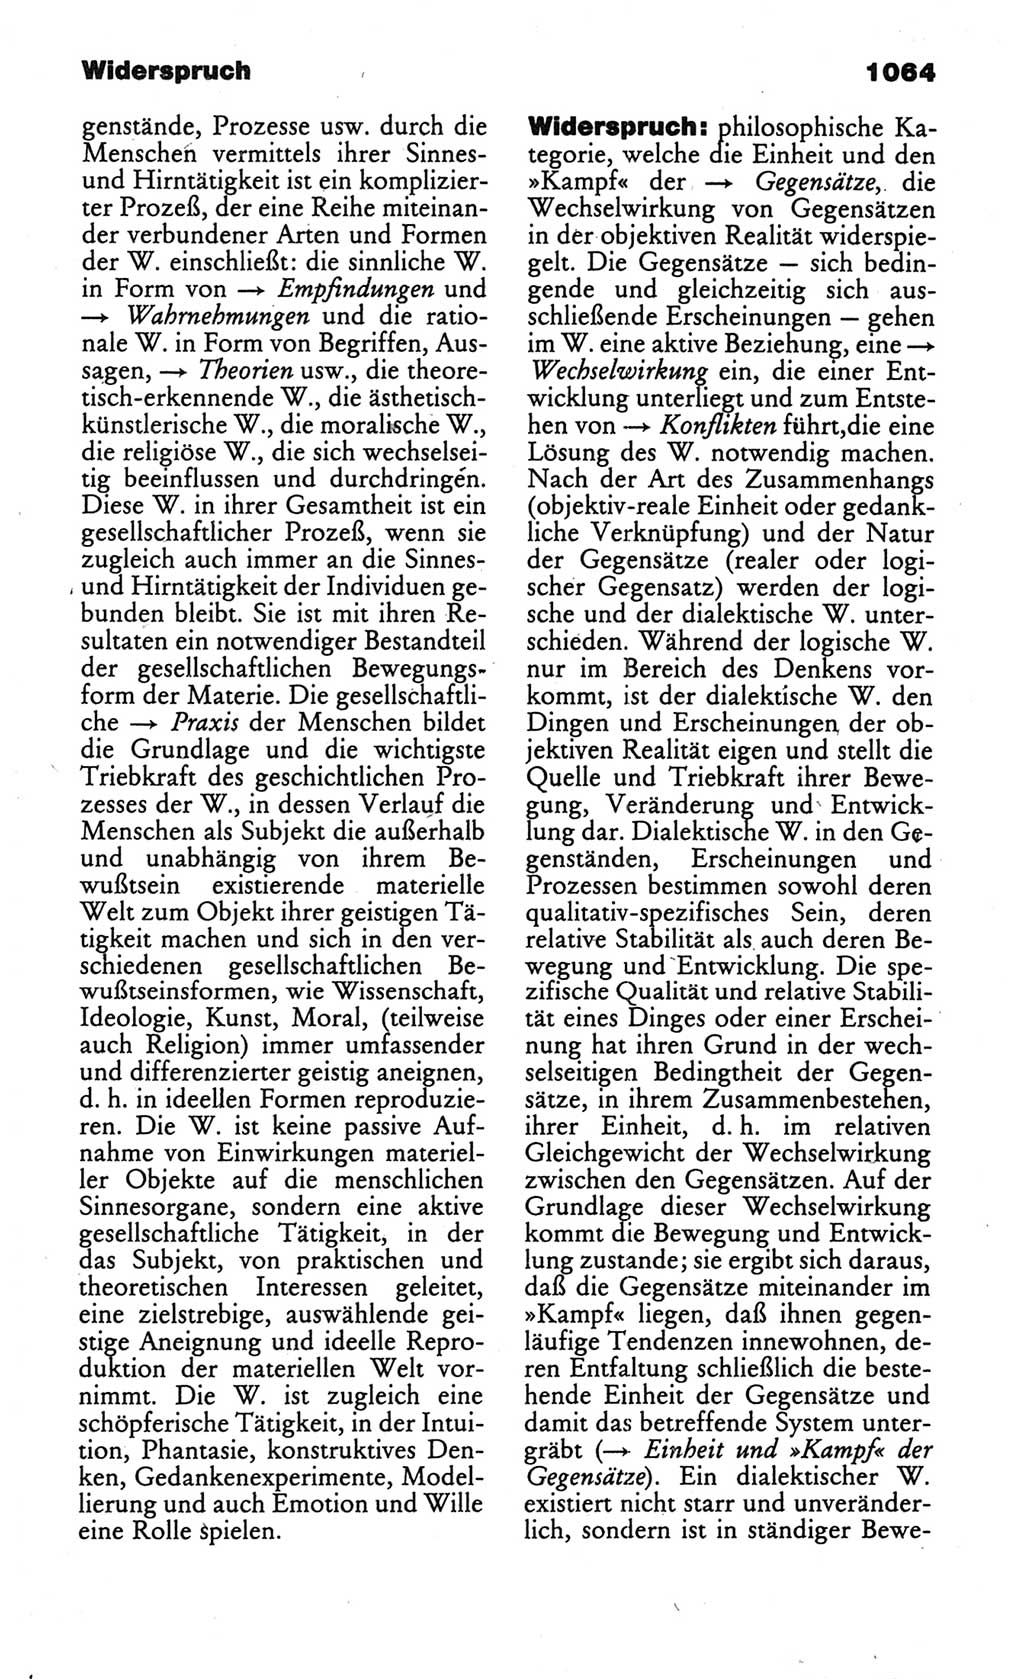 Kleines politisches Wörterbuch [Deutsche Demokratische Republik (DDR)] 1986, Seite 1064 (Kl. pol. Wb. DDR 1986, S. 1064)